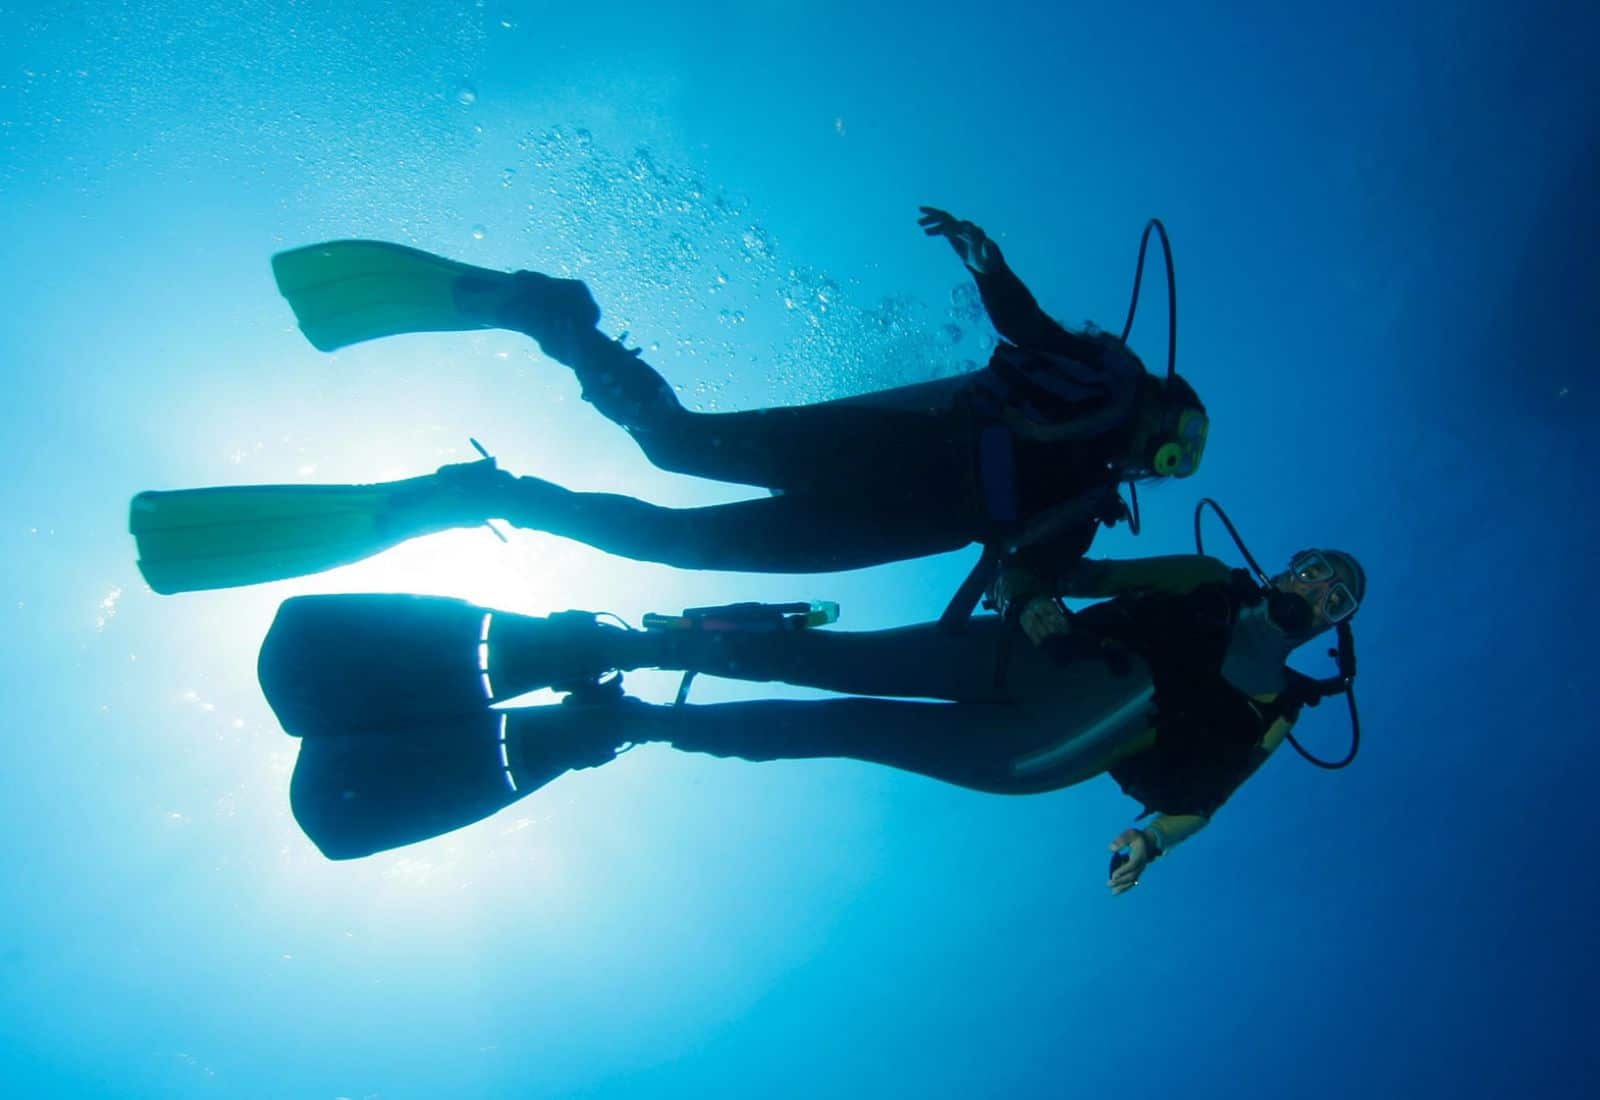 Itinerari archeologici subacquei: dove fare immersioni in Sicilia